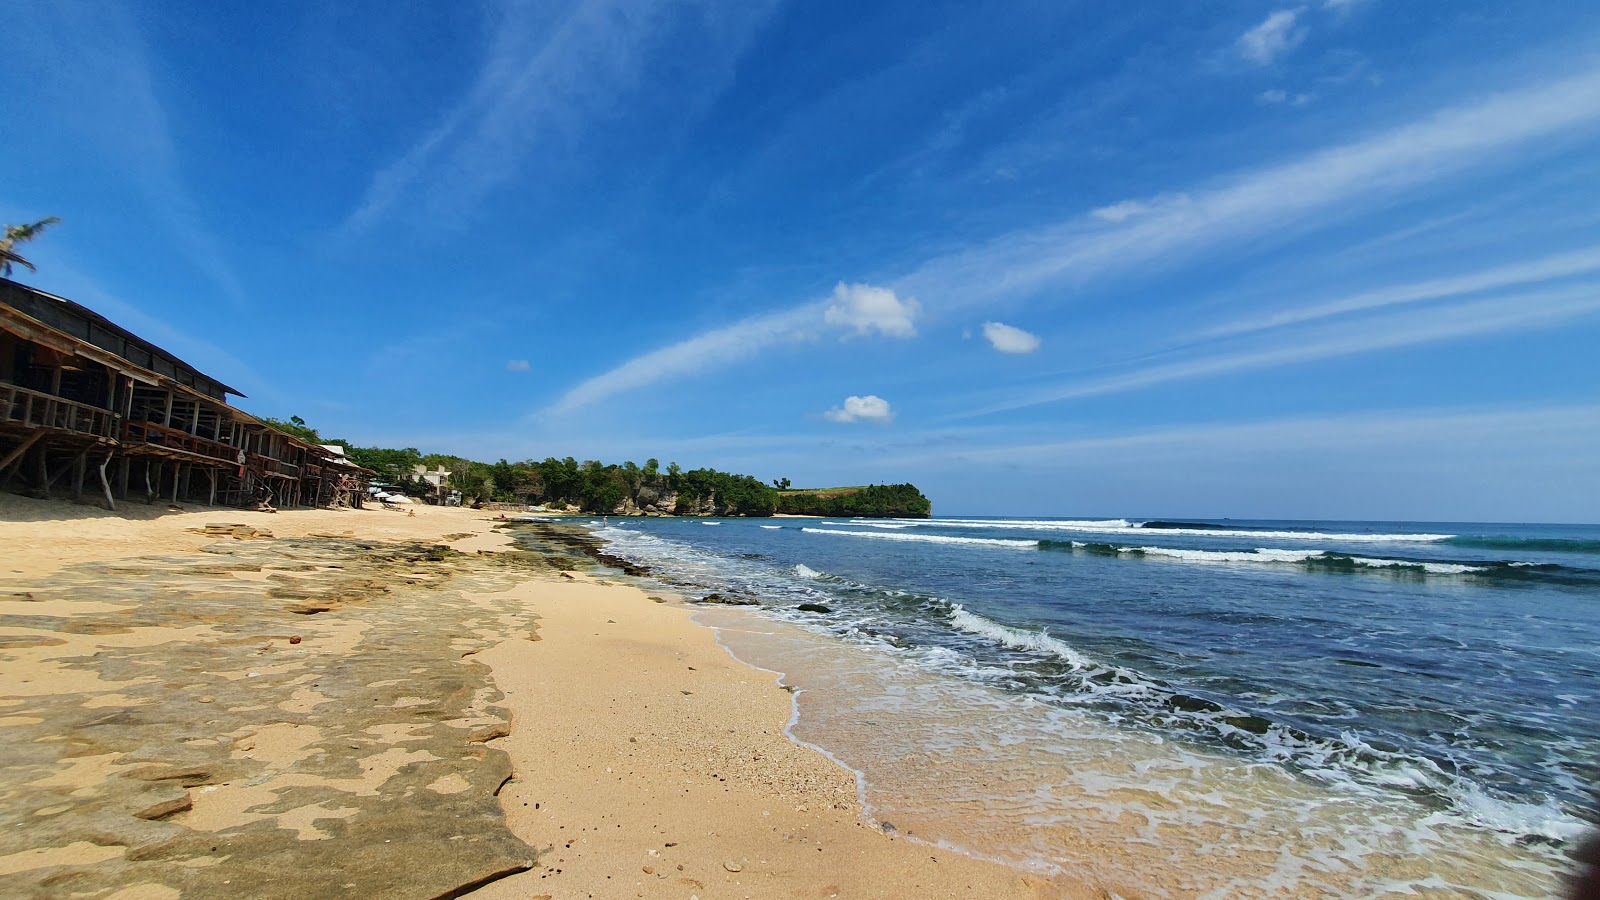 Foto de Playa Balangan - lugar popular entre los conocedores del relax